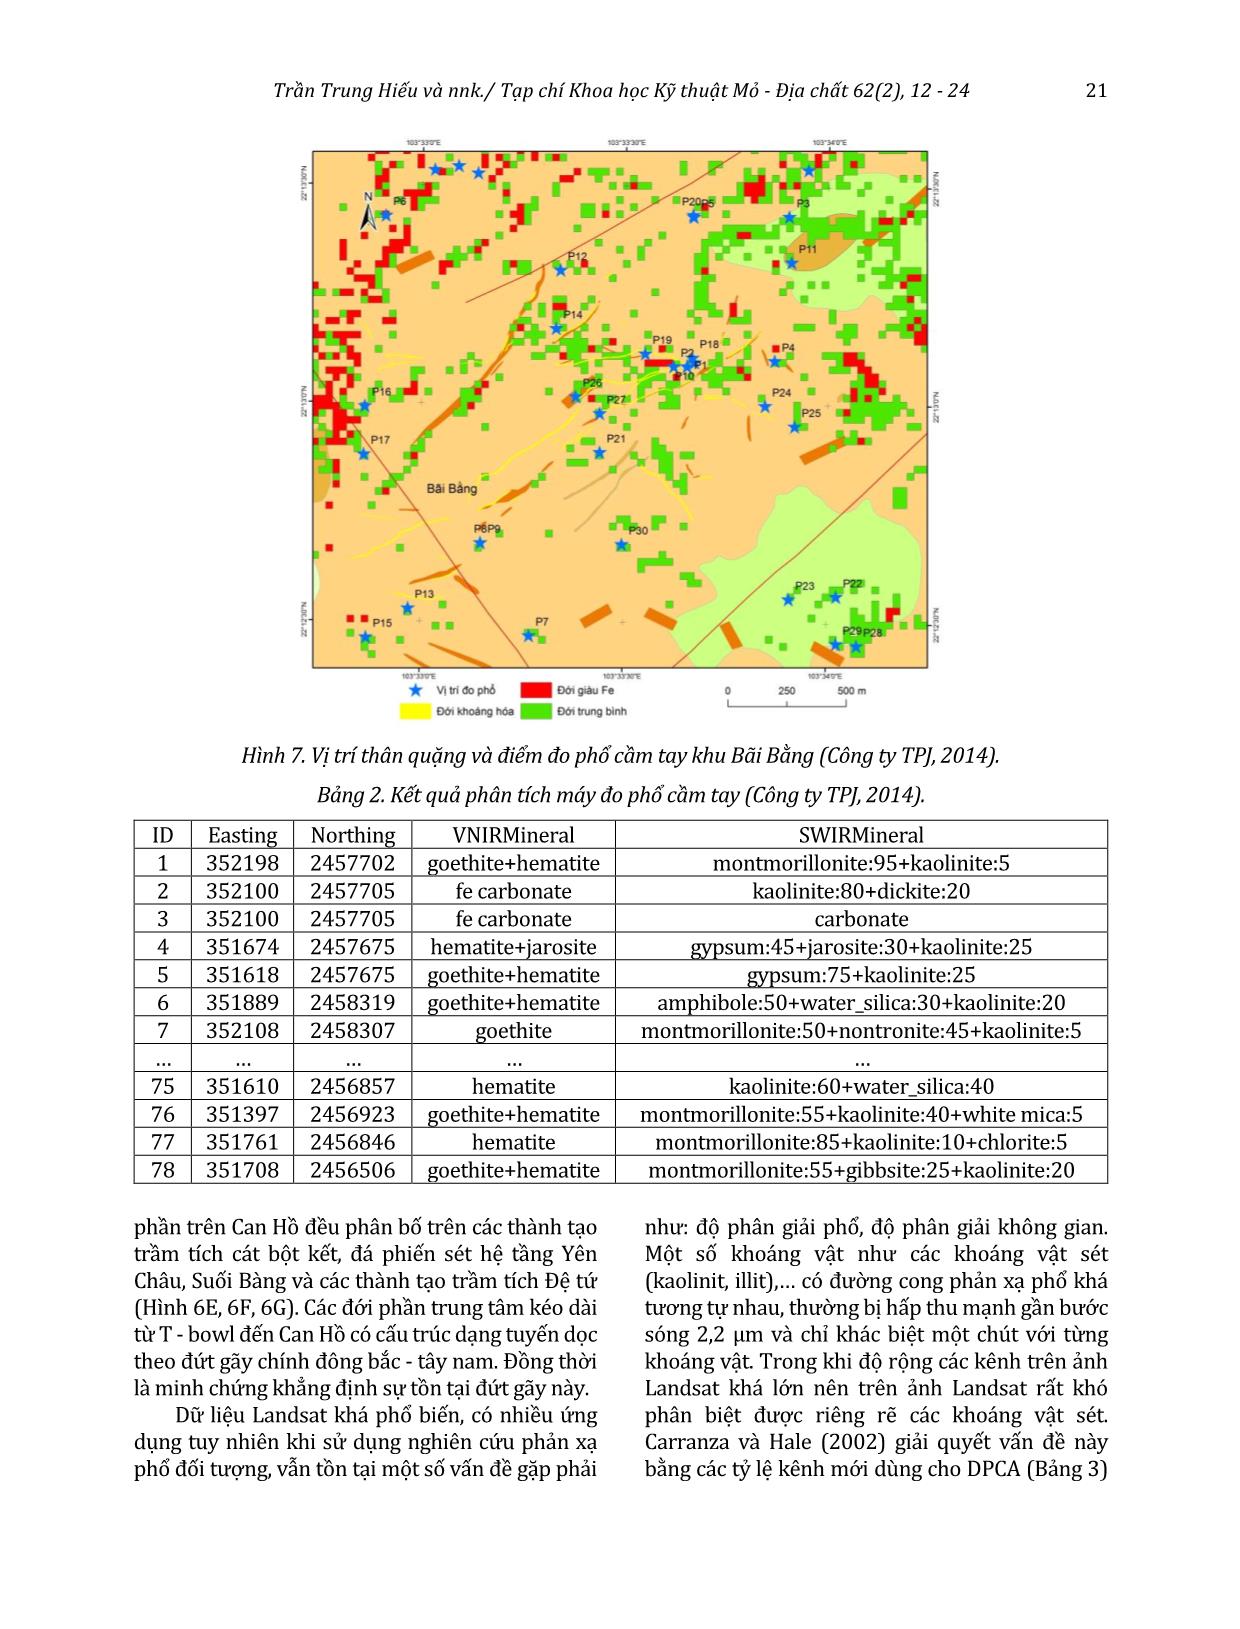 Xác định các đới biến đổi giàu khoáng vật sét và oxit sắt sử dụng ảnh Landsat 8 khu vực Pu Sam Cáp, Lai Châu trang 10